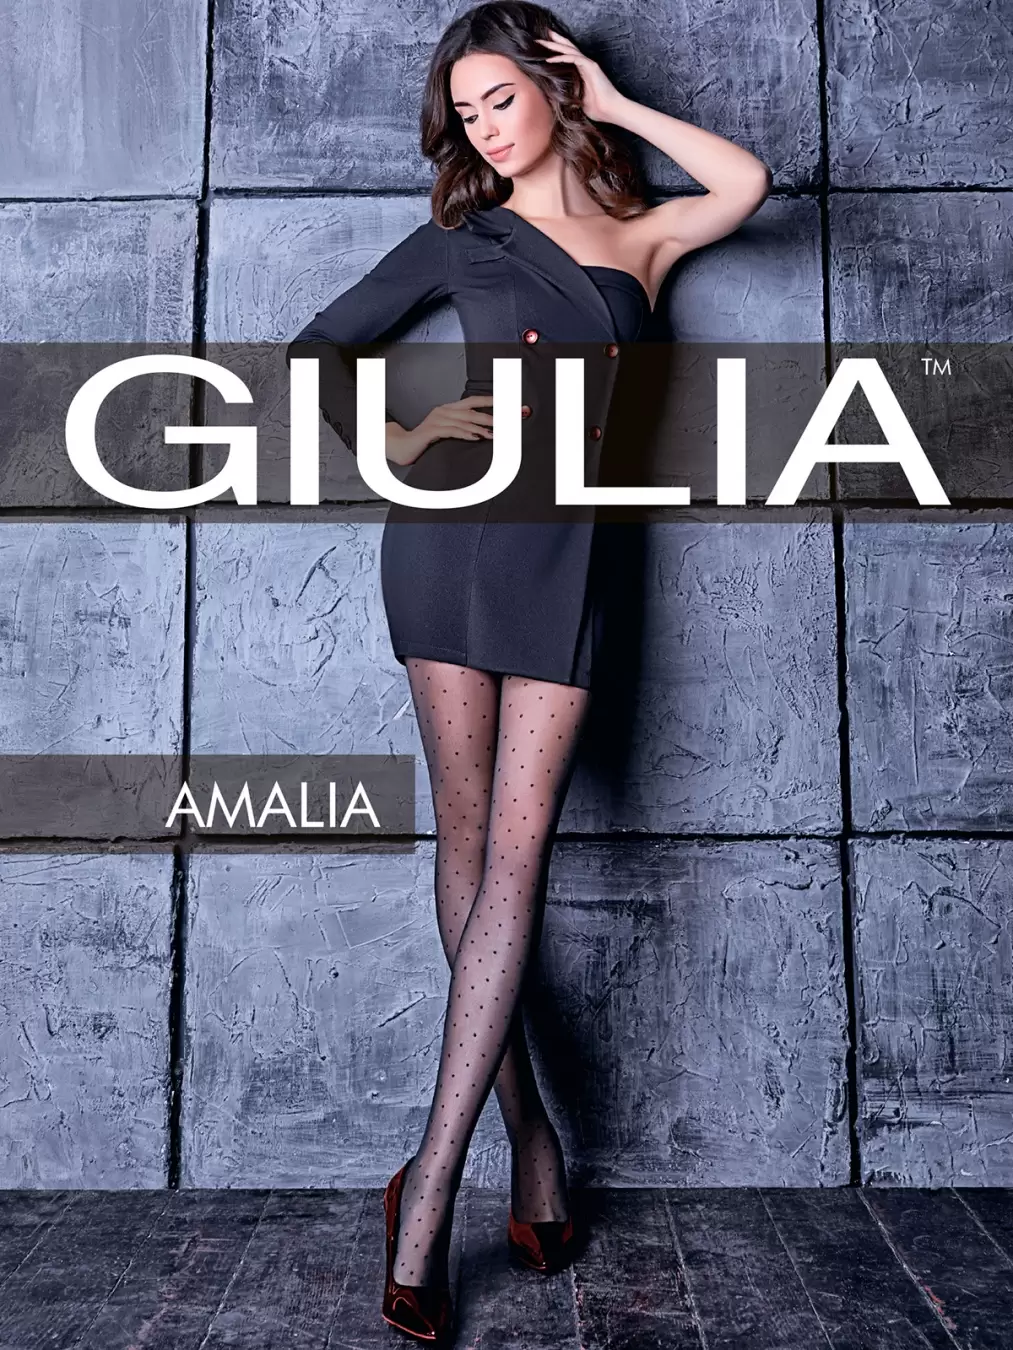 Giulia AMALIA 01, фантазийные колготки купить недорого в интернет-магазине  Nosok.ru Москва